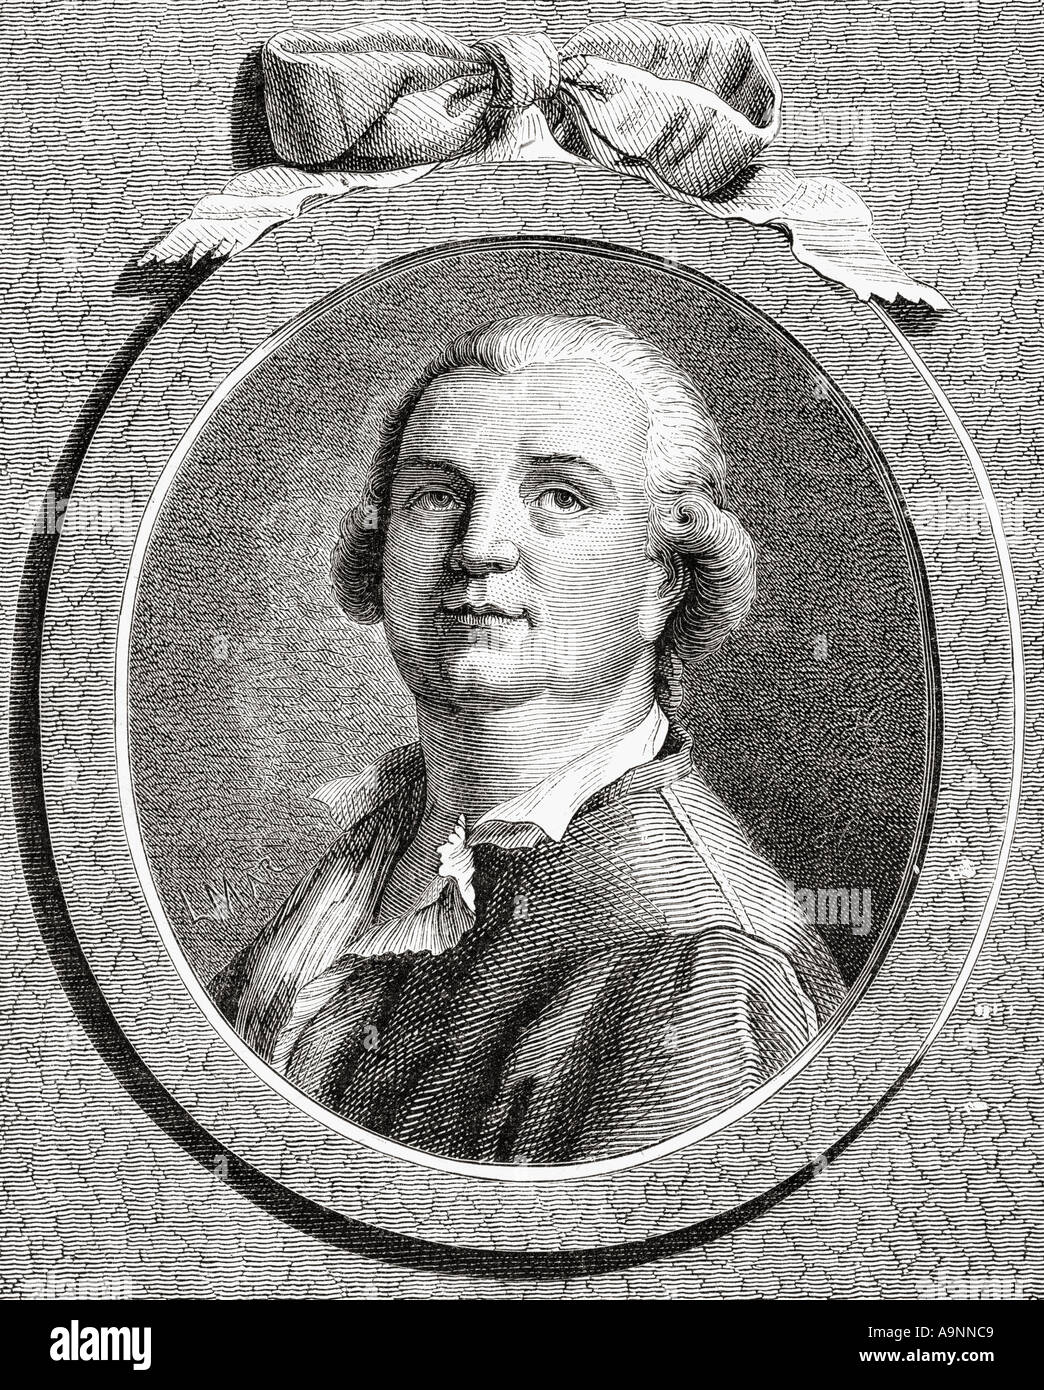 Count Alessandro di Cagliostro,  alias of the occultist Giuseppe Bálsamo, 1743 - 1795.  Italian adventurer, magician and freemason. Stock Photo